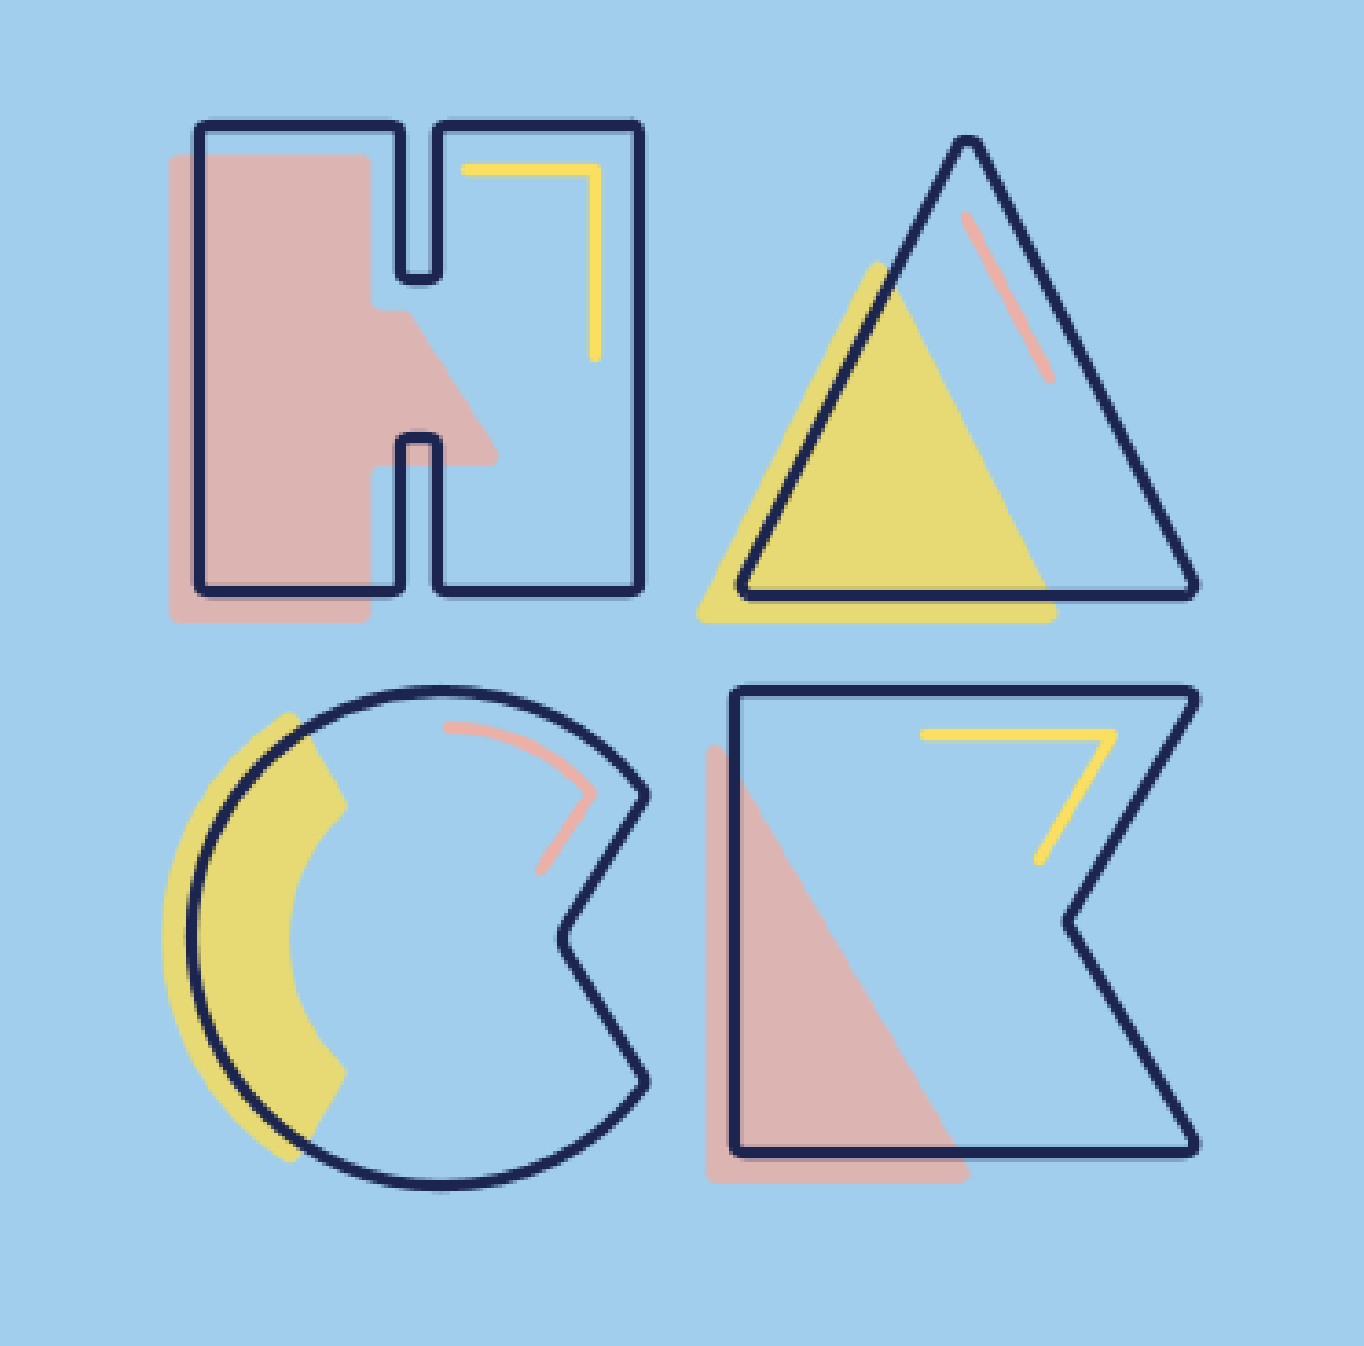 HackMIT logo